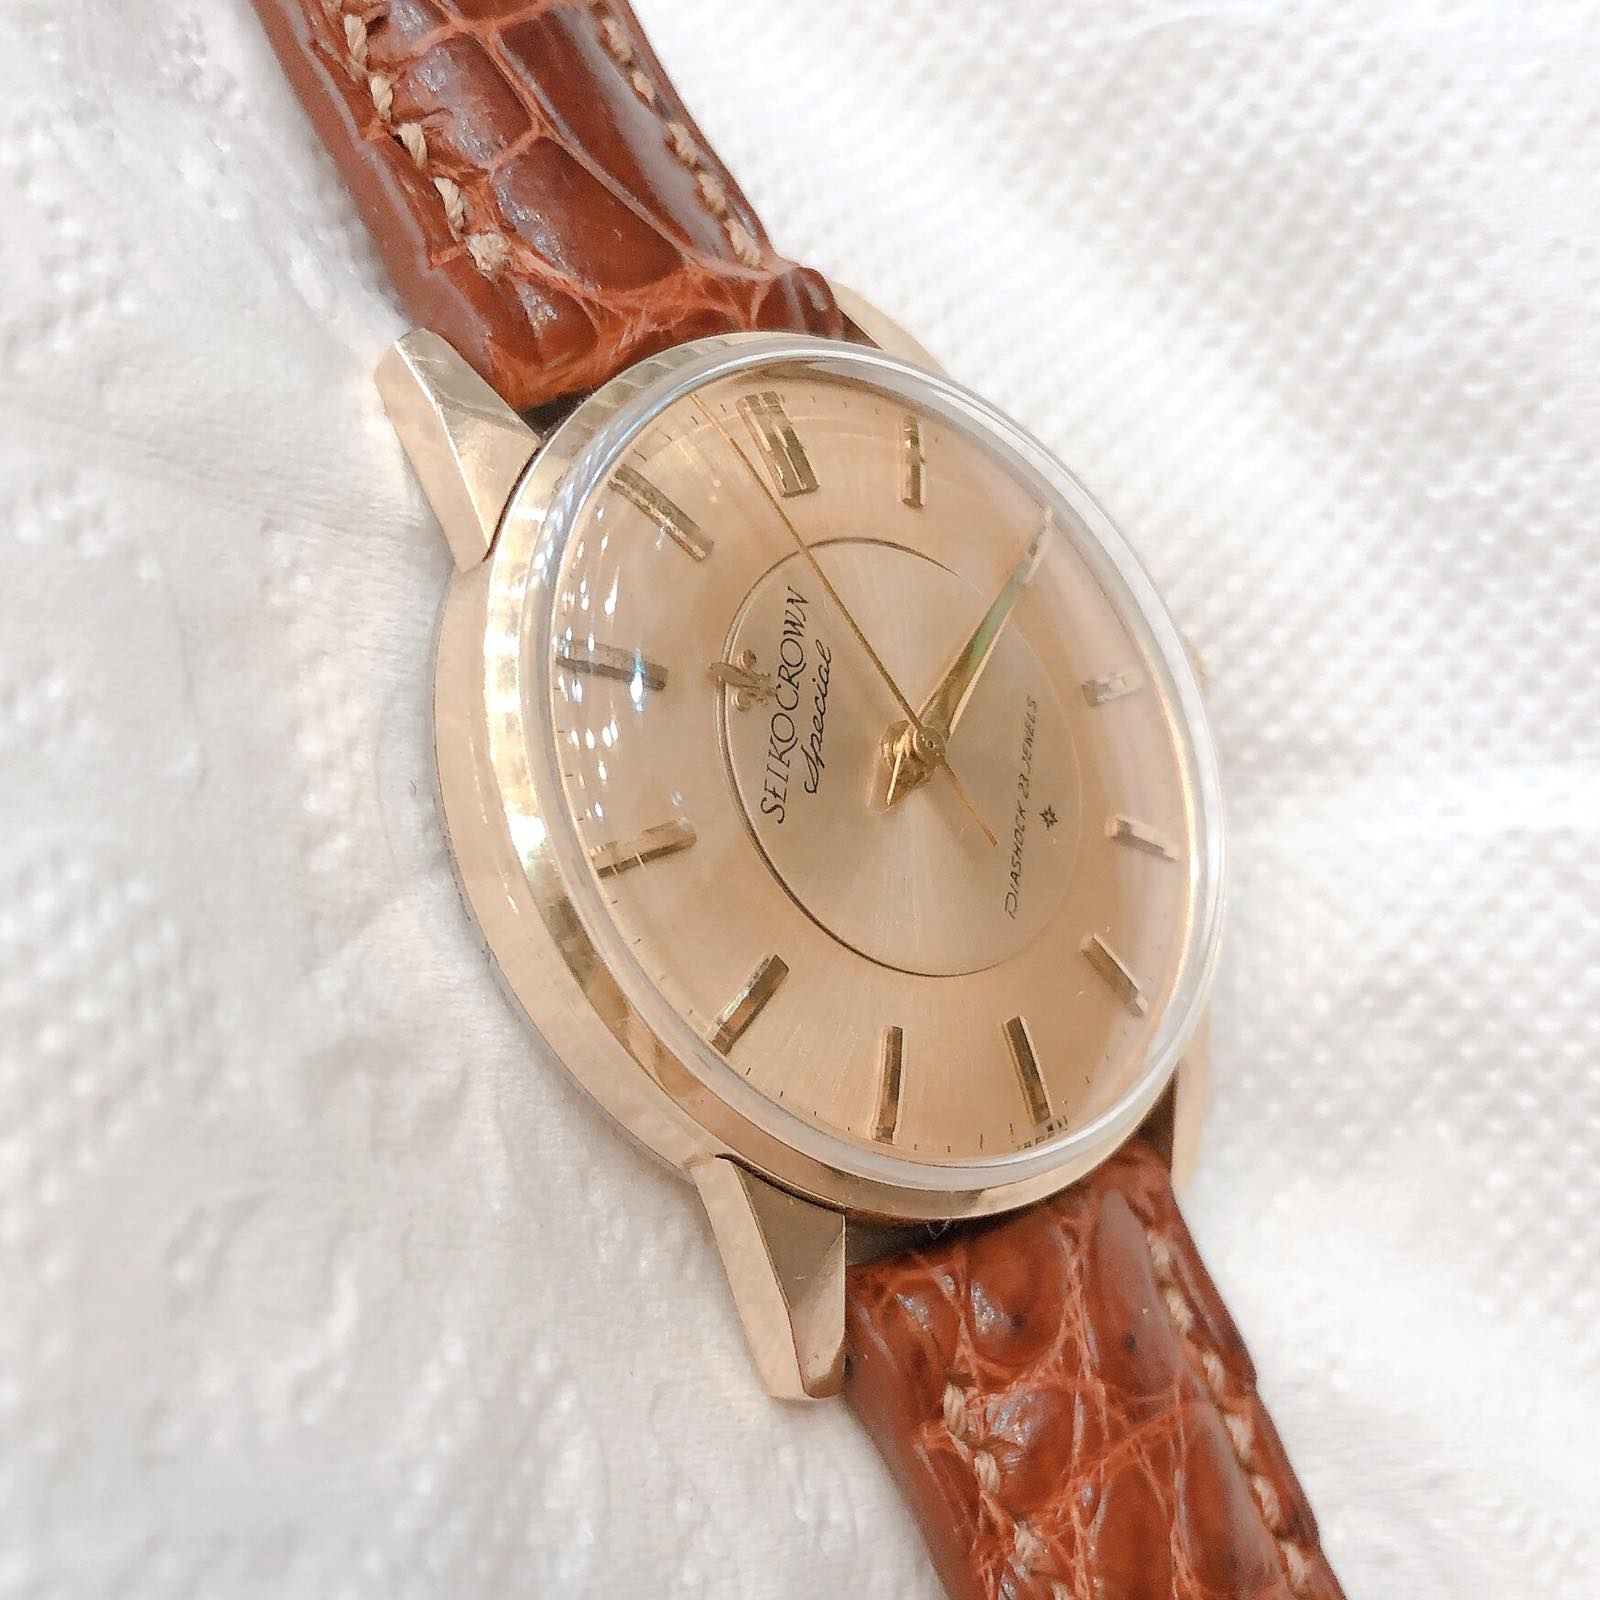 Đồng hồ cổ Seiko CROWN Special kim đĩar lên dây 14k goldfilled chính hãng nhật bản